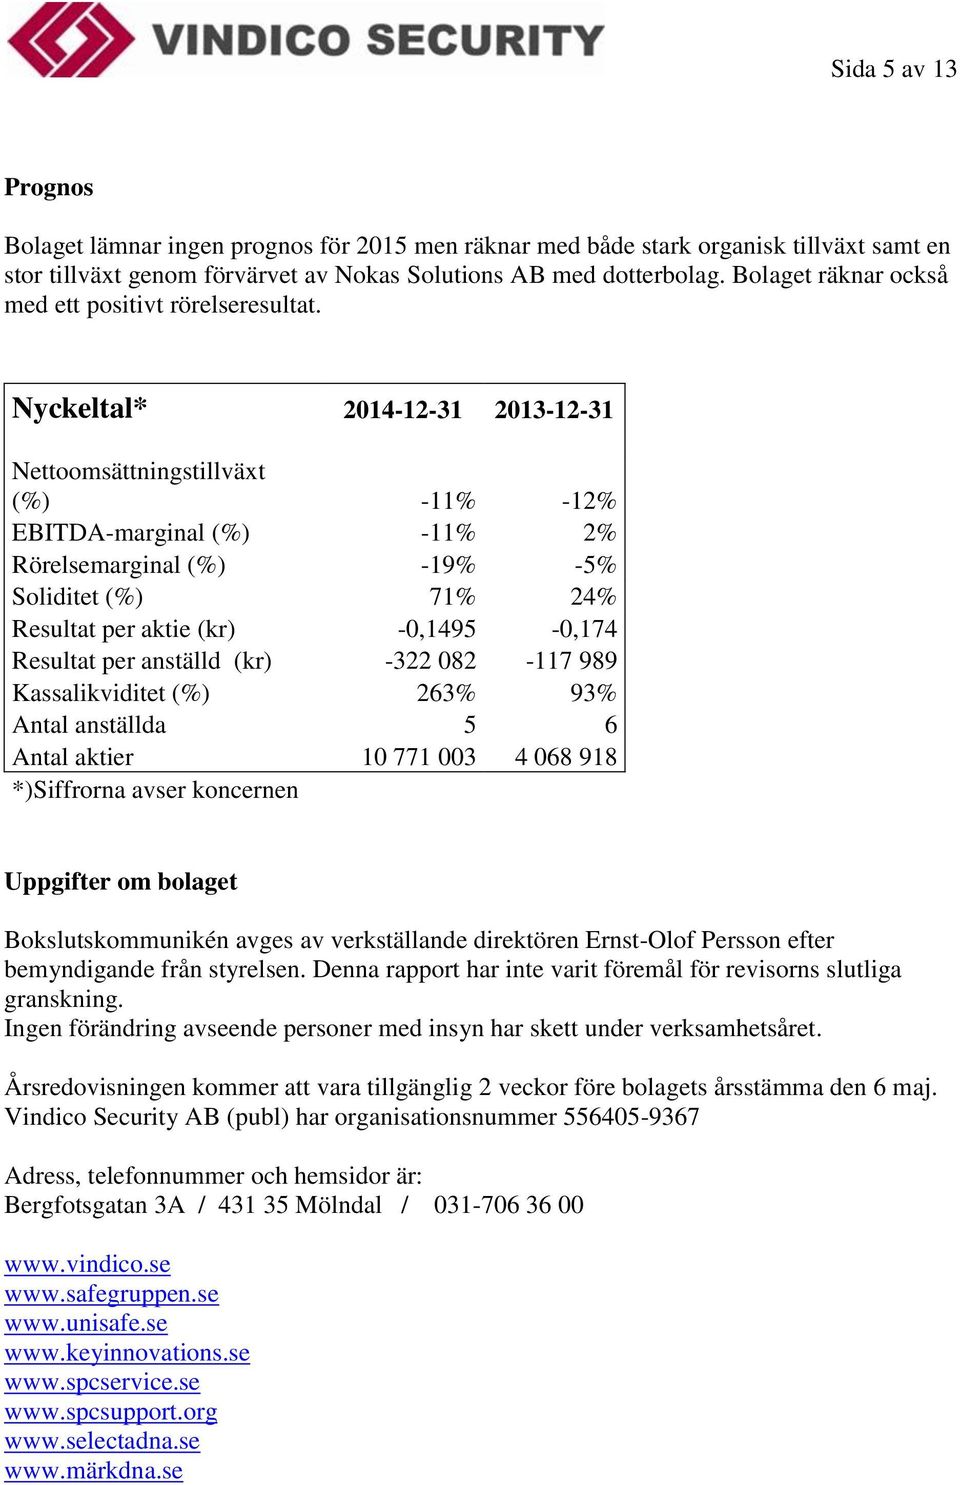 Nyckeltal* 2014-12-31 2013-12-31 Nettoomsättningstillväxt (%) -11% -12% EBITDA-marginal (%) -11% 2% Rörelsemarginal (%) -19% -5% Soliditet (%) 71% 24% Resultat per aktie (kr) -0,1495-0,174 Resultat